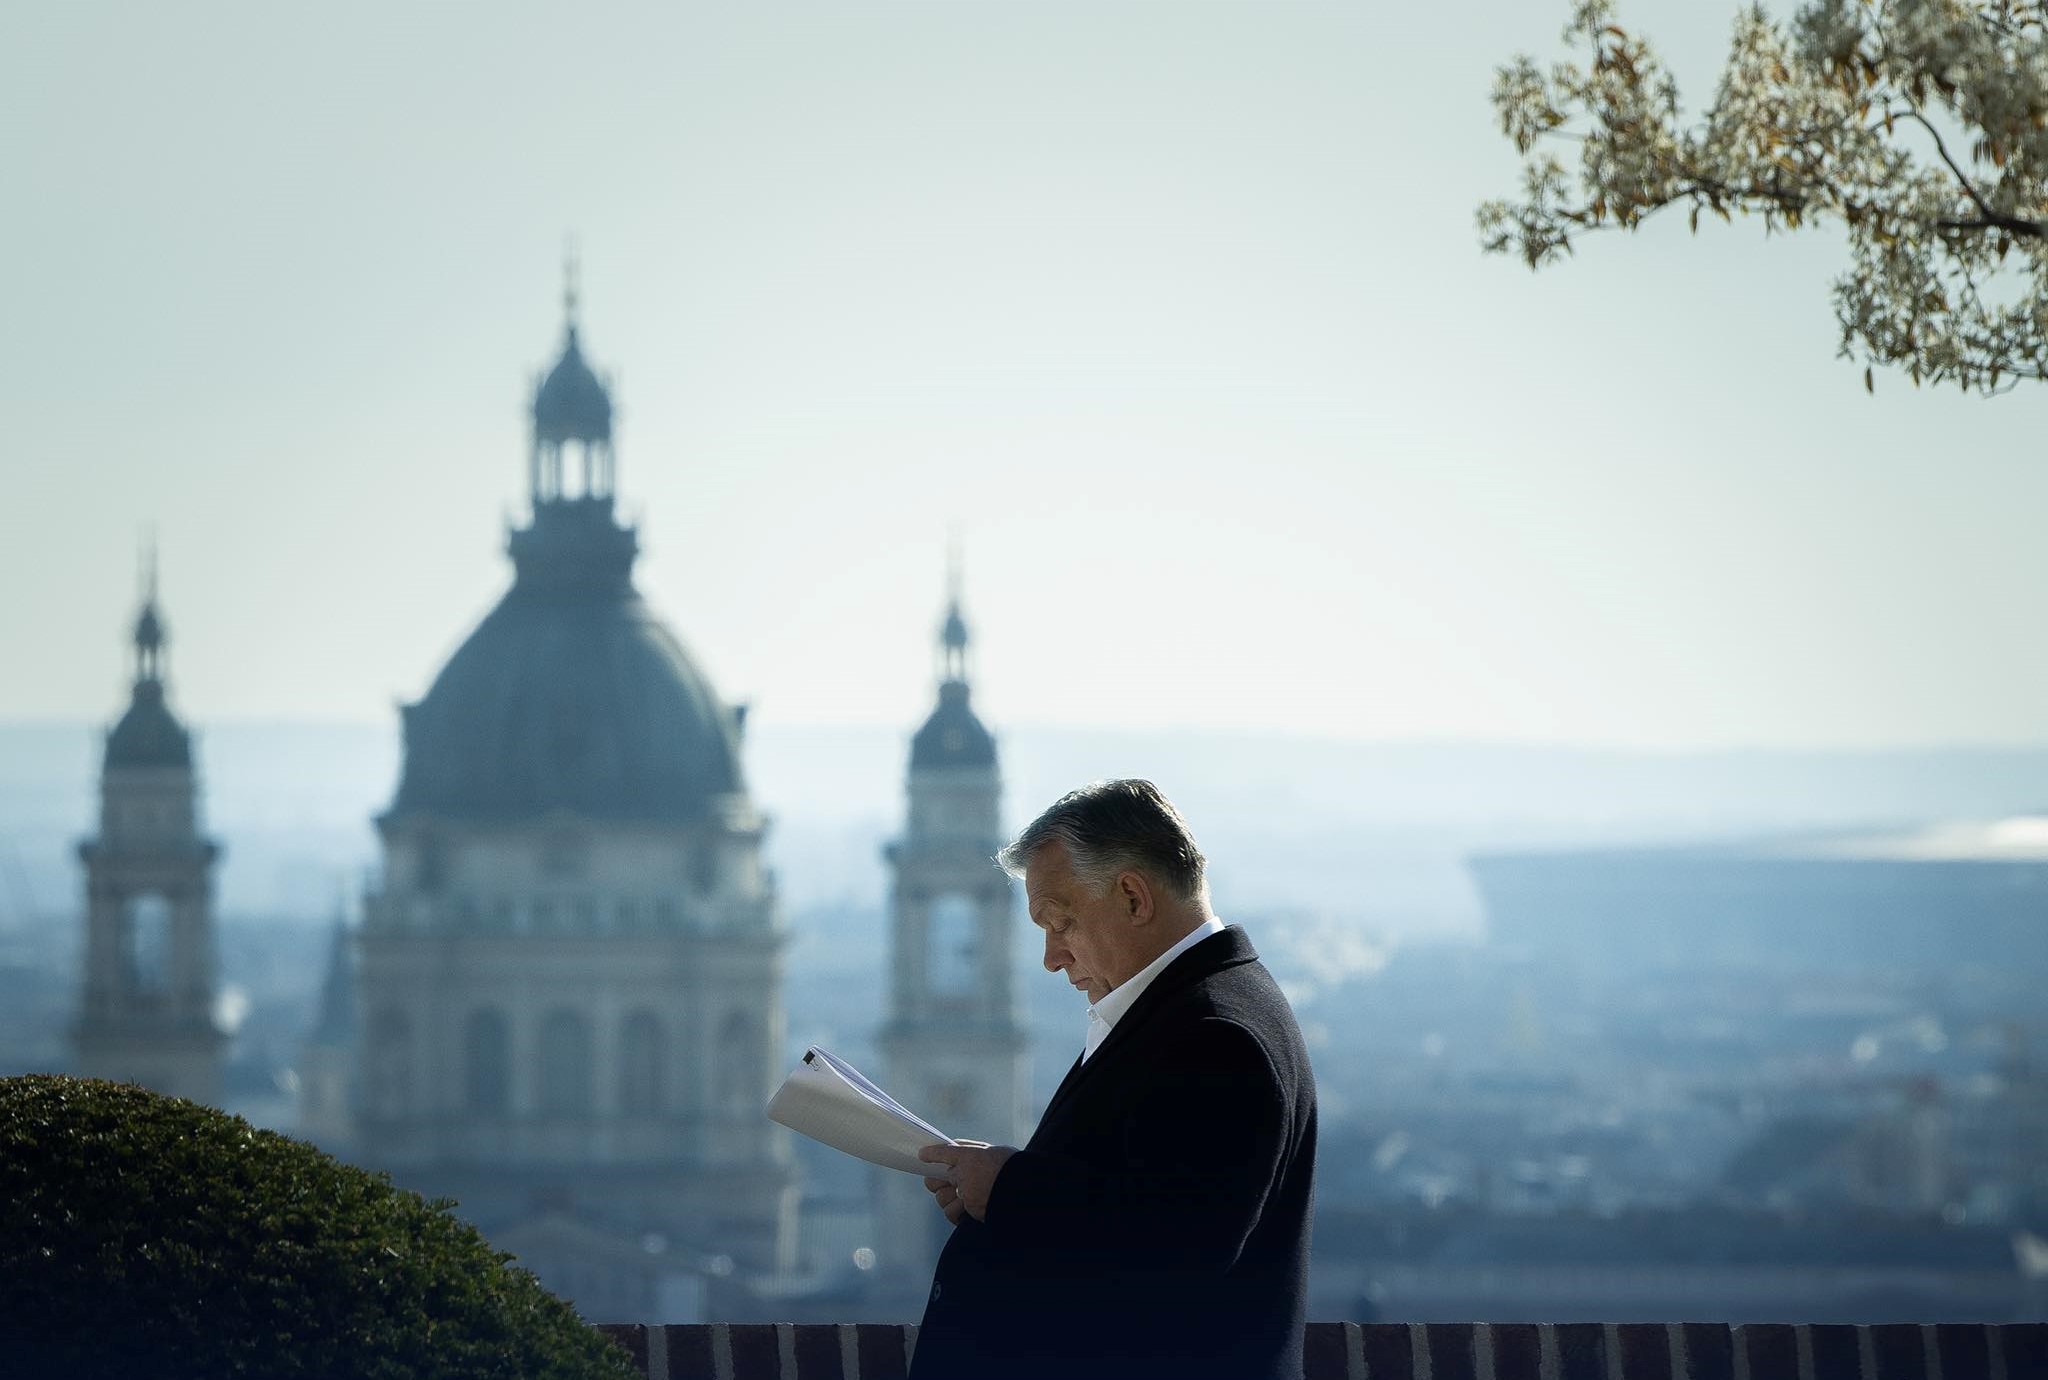 Viktor Orbán ist 60 Jahre alt geworden